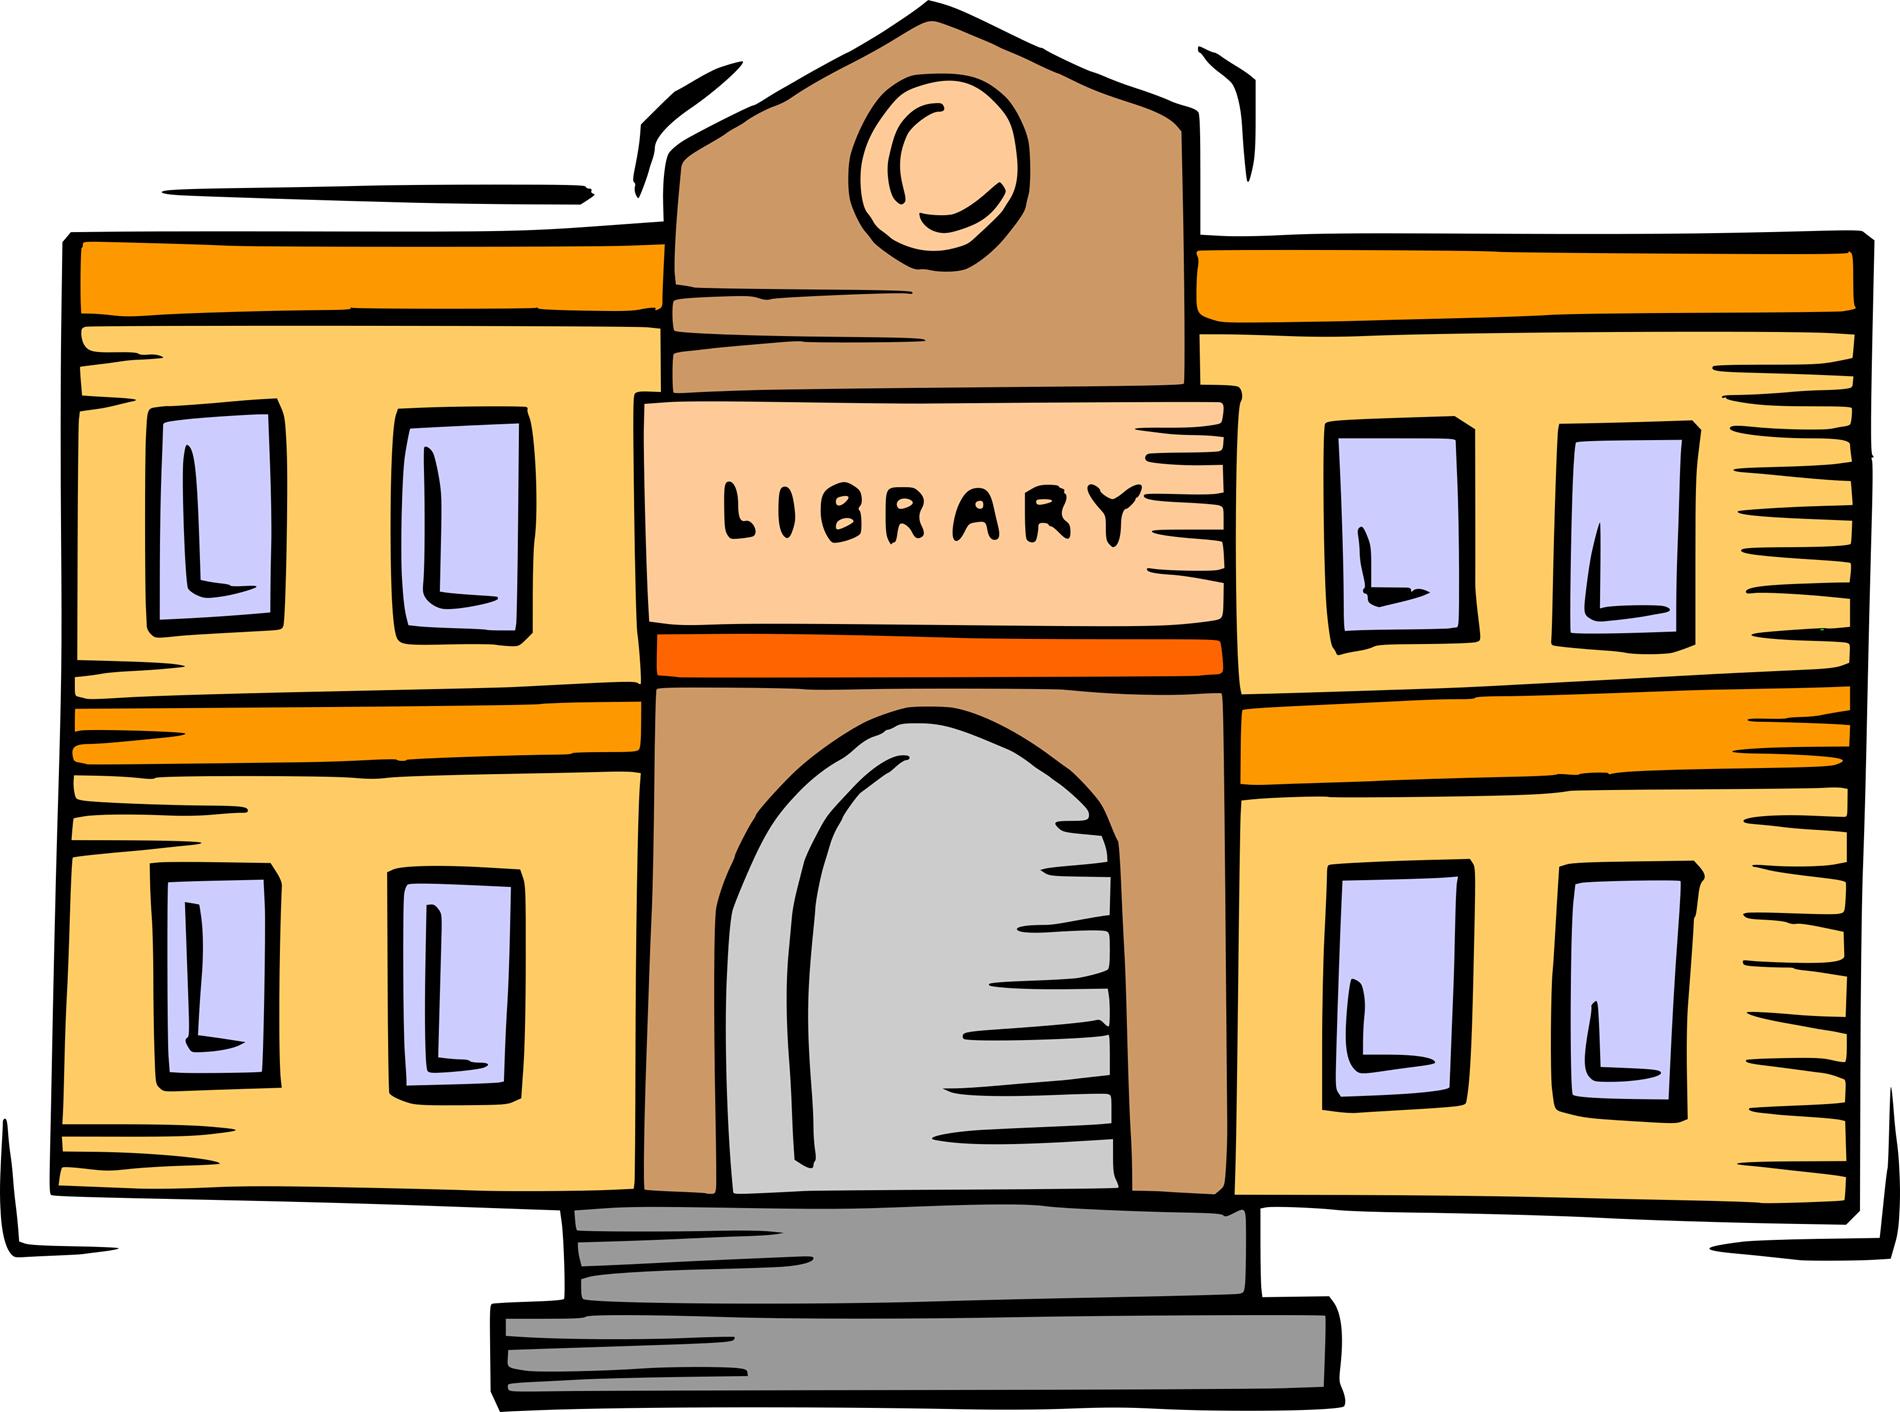 Library Building Cartoon